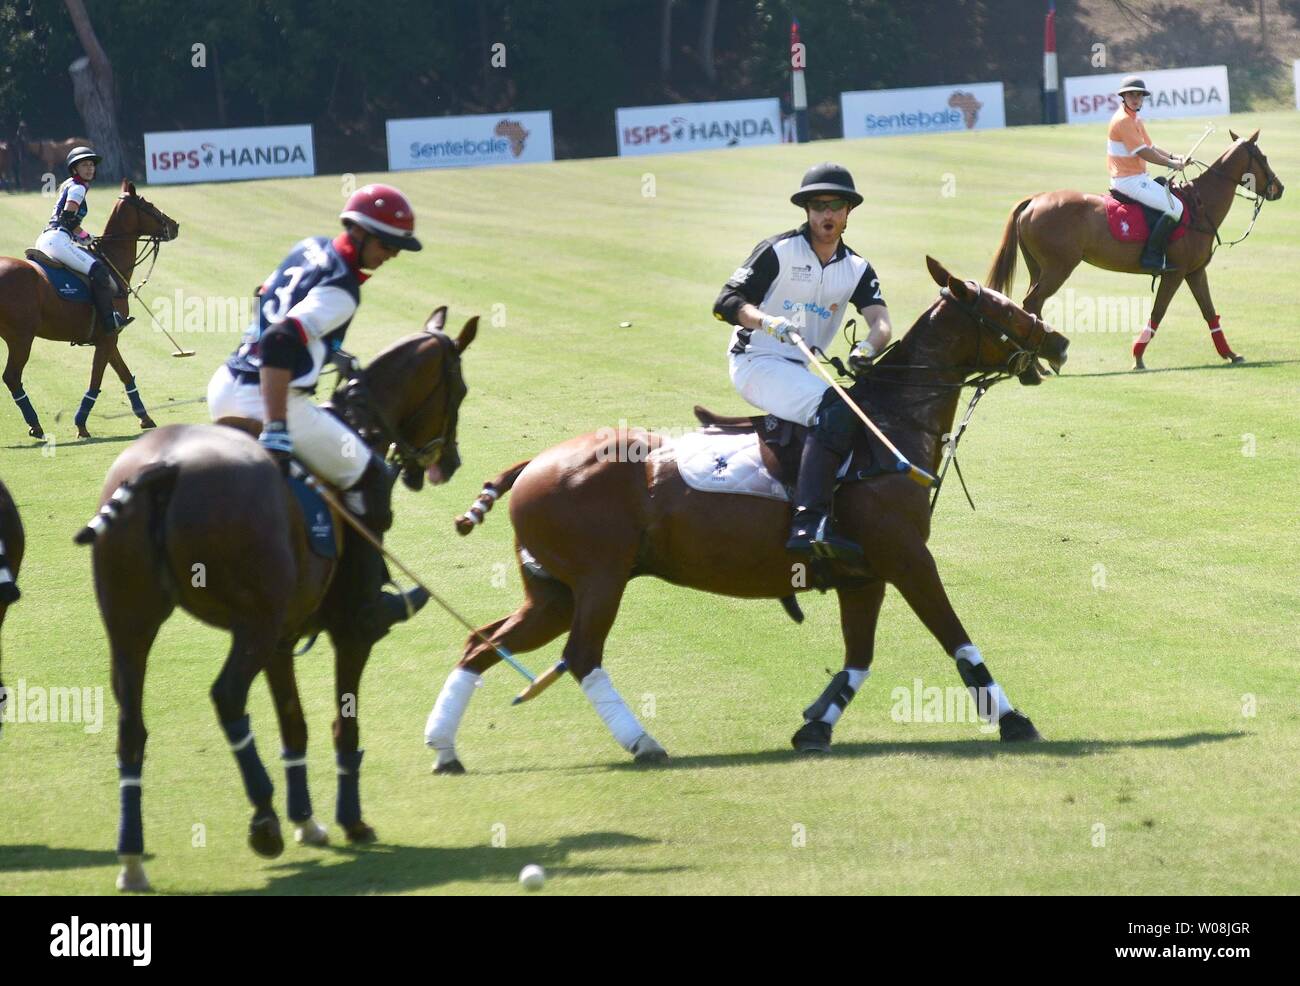 Rome, le prince Harry au Roma Polo Club joue le FSI Sentebale Handa Polo Cup.  Quand : 24 mai 2019 Credit : IPA/WENN.com **Uniquement disponible pour  publication au Royaume-Uni, USA, Allemagne, Autriche,